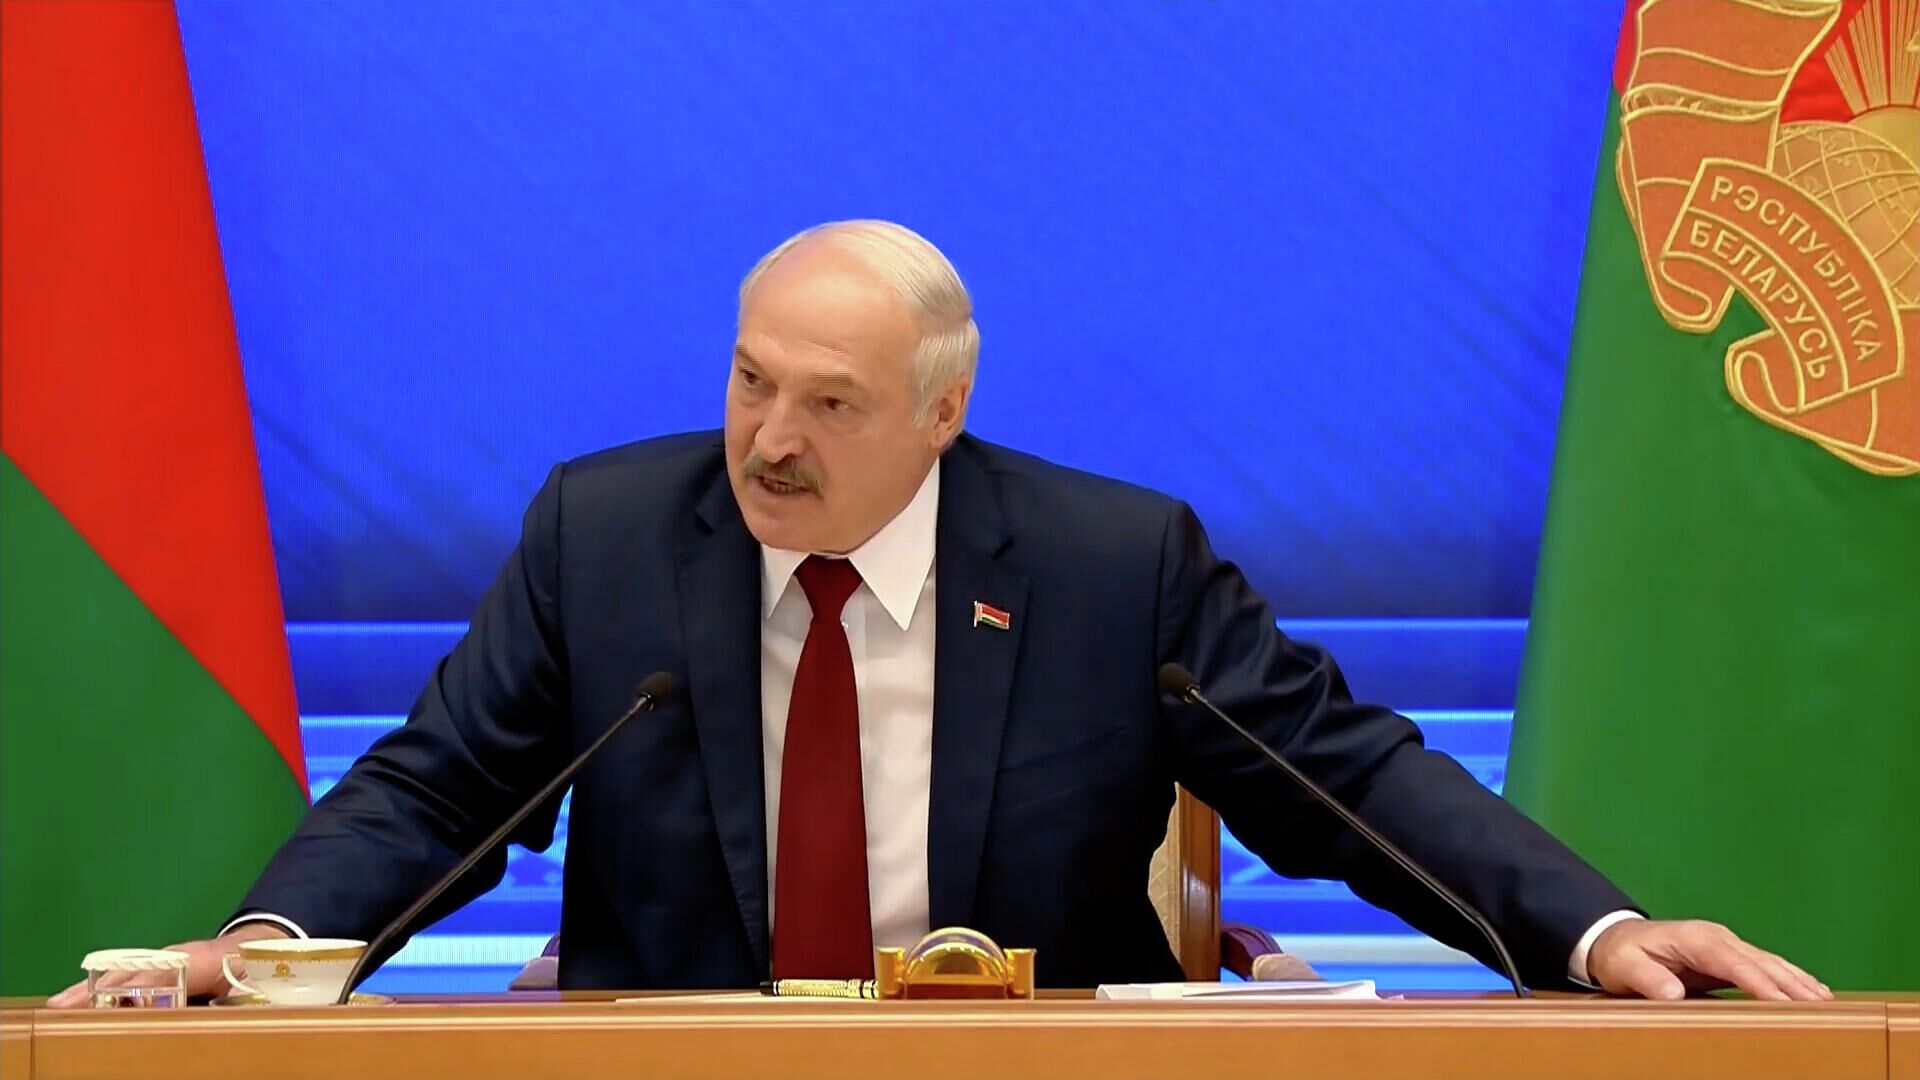 Путин поздравил Лукашенко с днем рождения